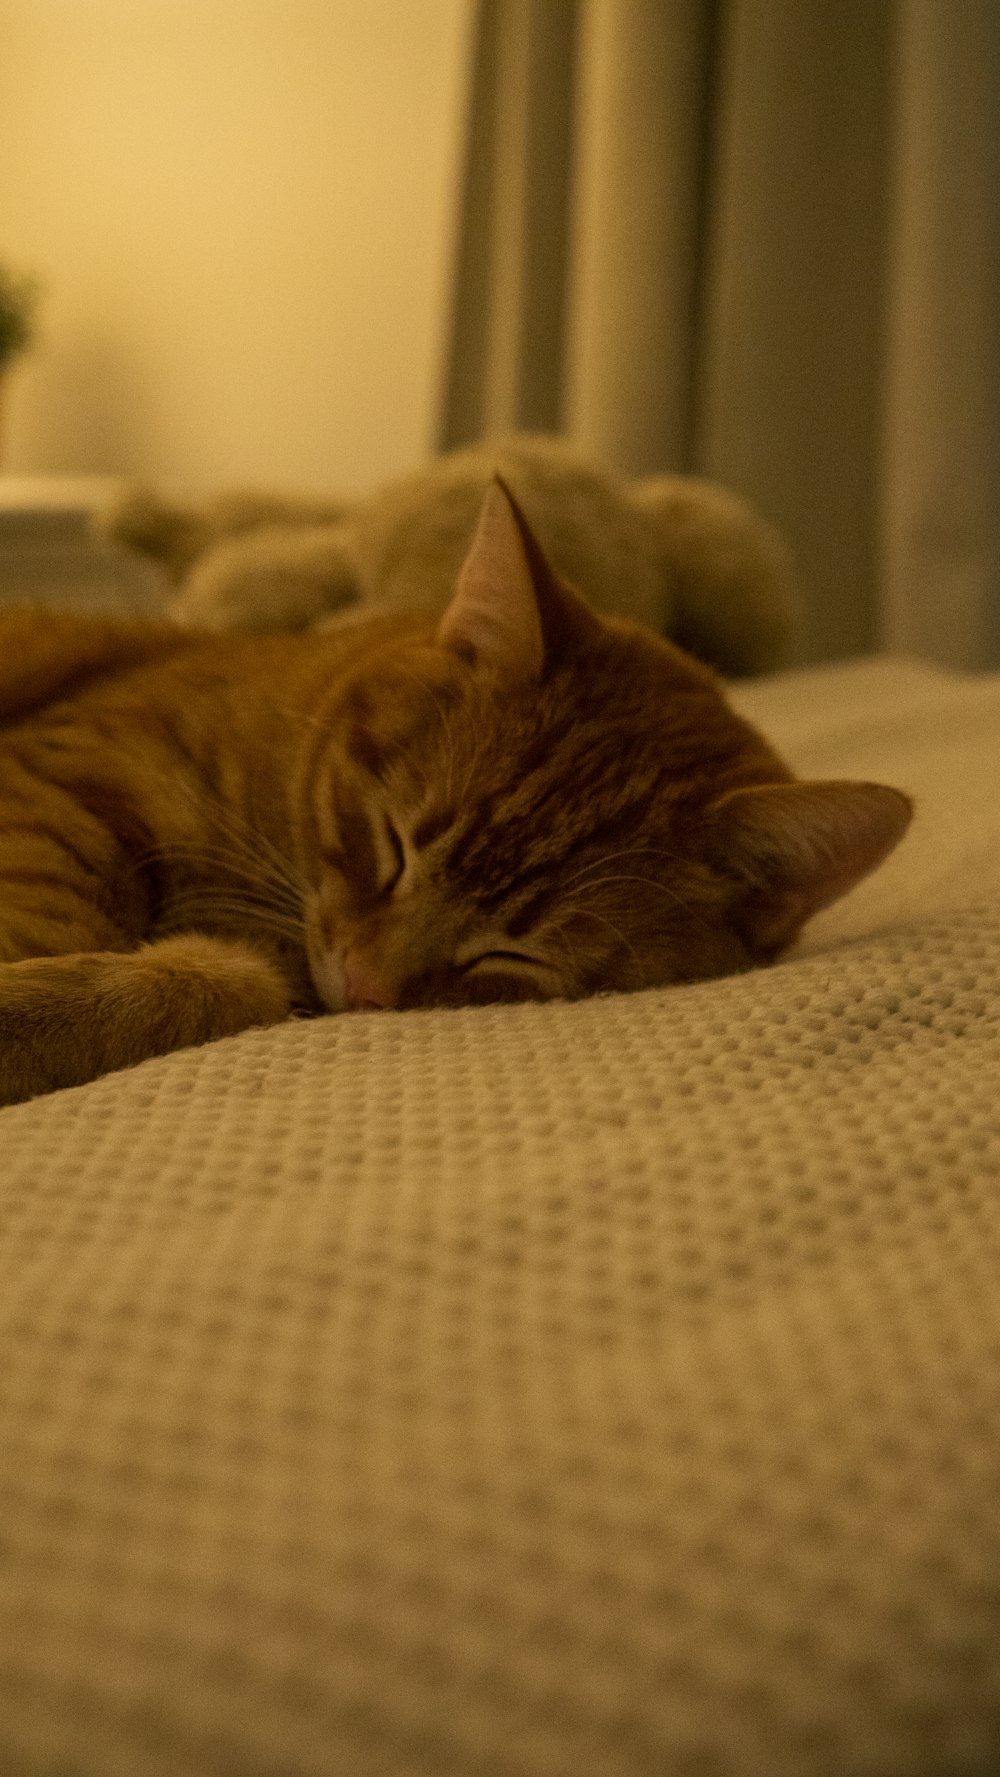 eine orangefarbene Katze, die auf einem Bett liegt